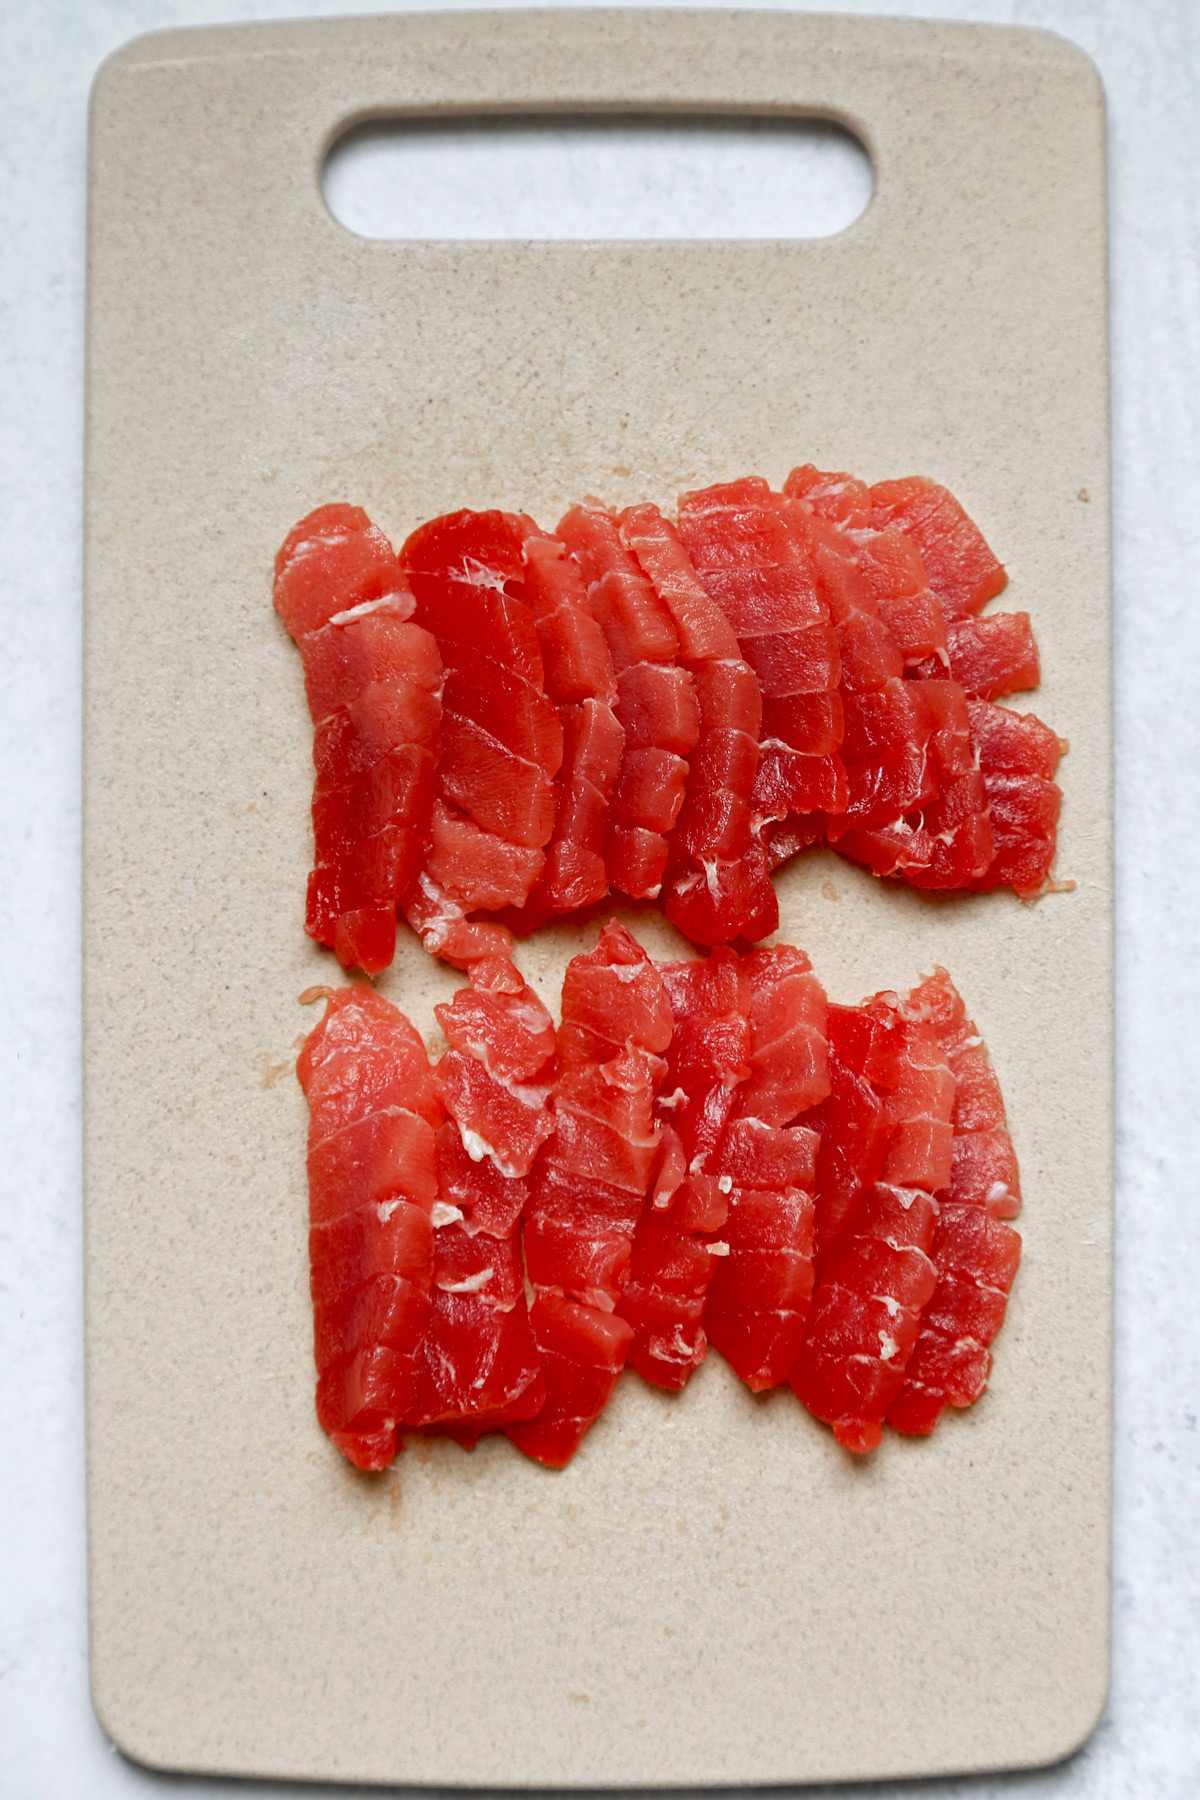 Sliced sushi grade tuna